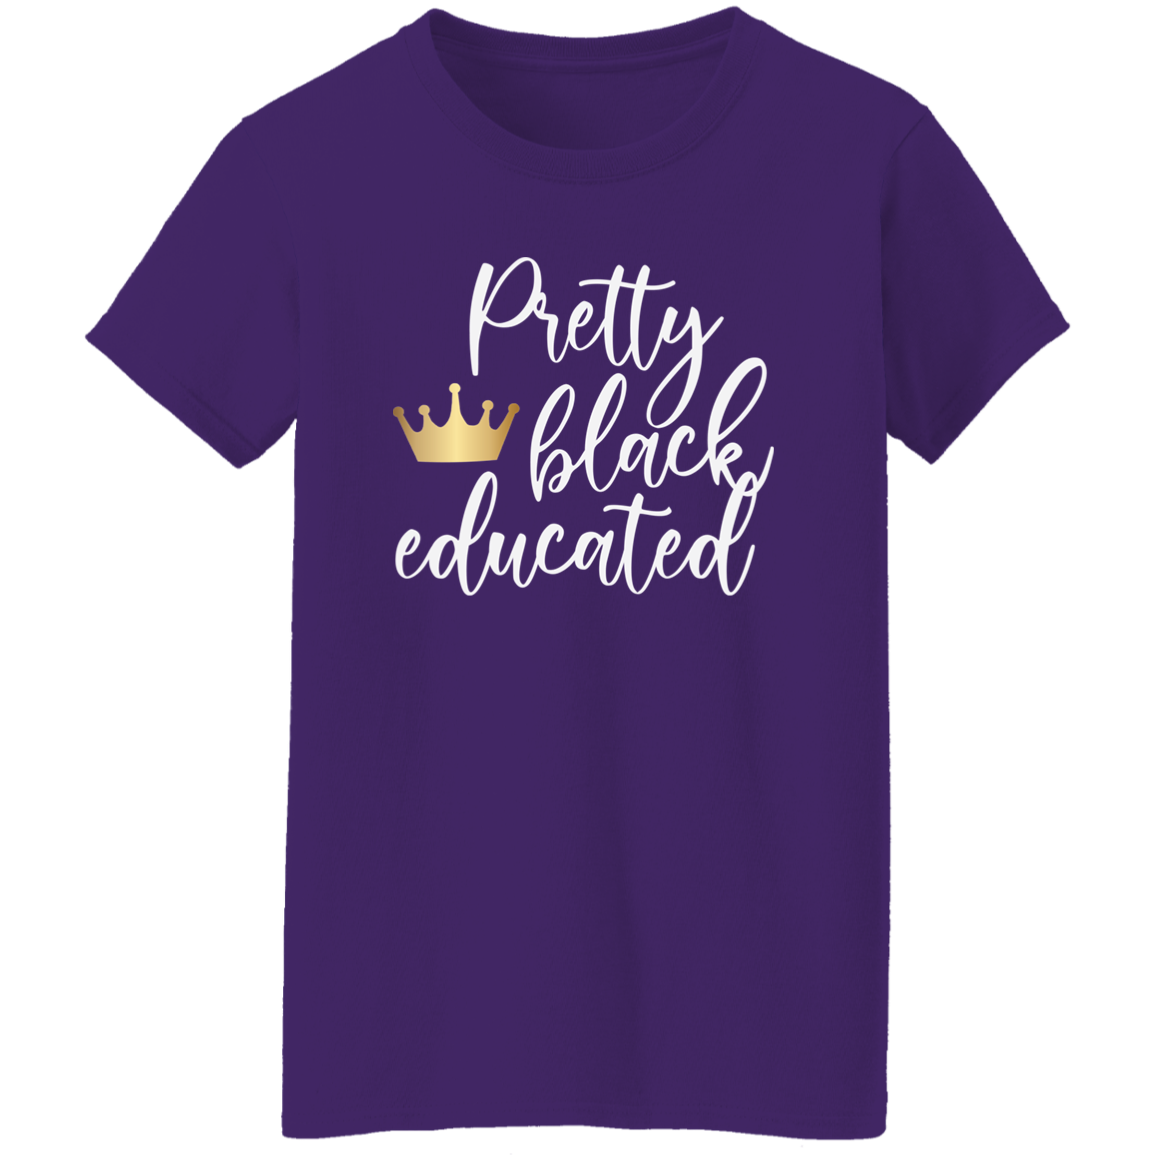 Educated Ladies' 5.3 oz. T-Shirt